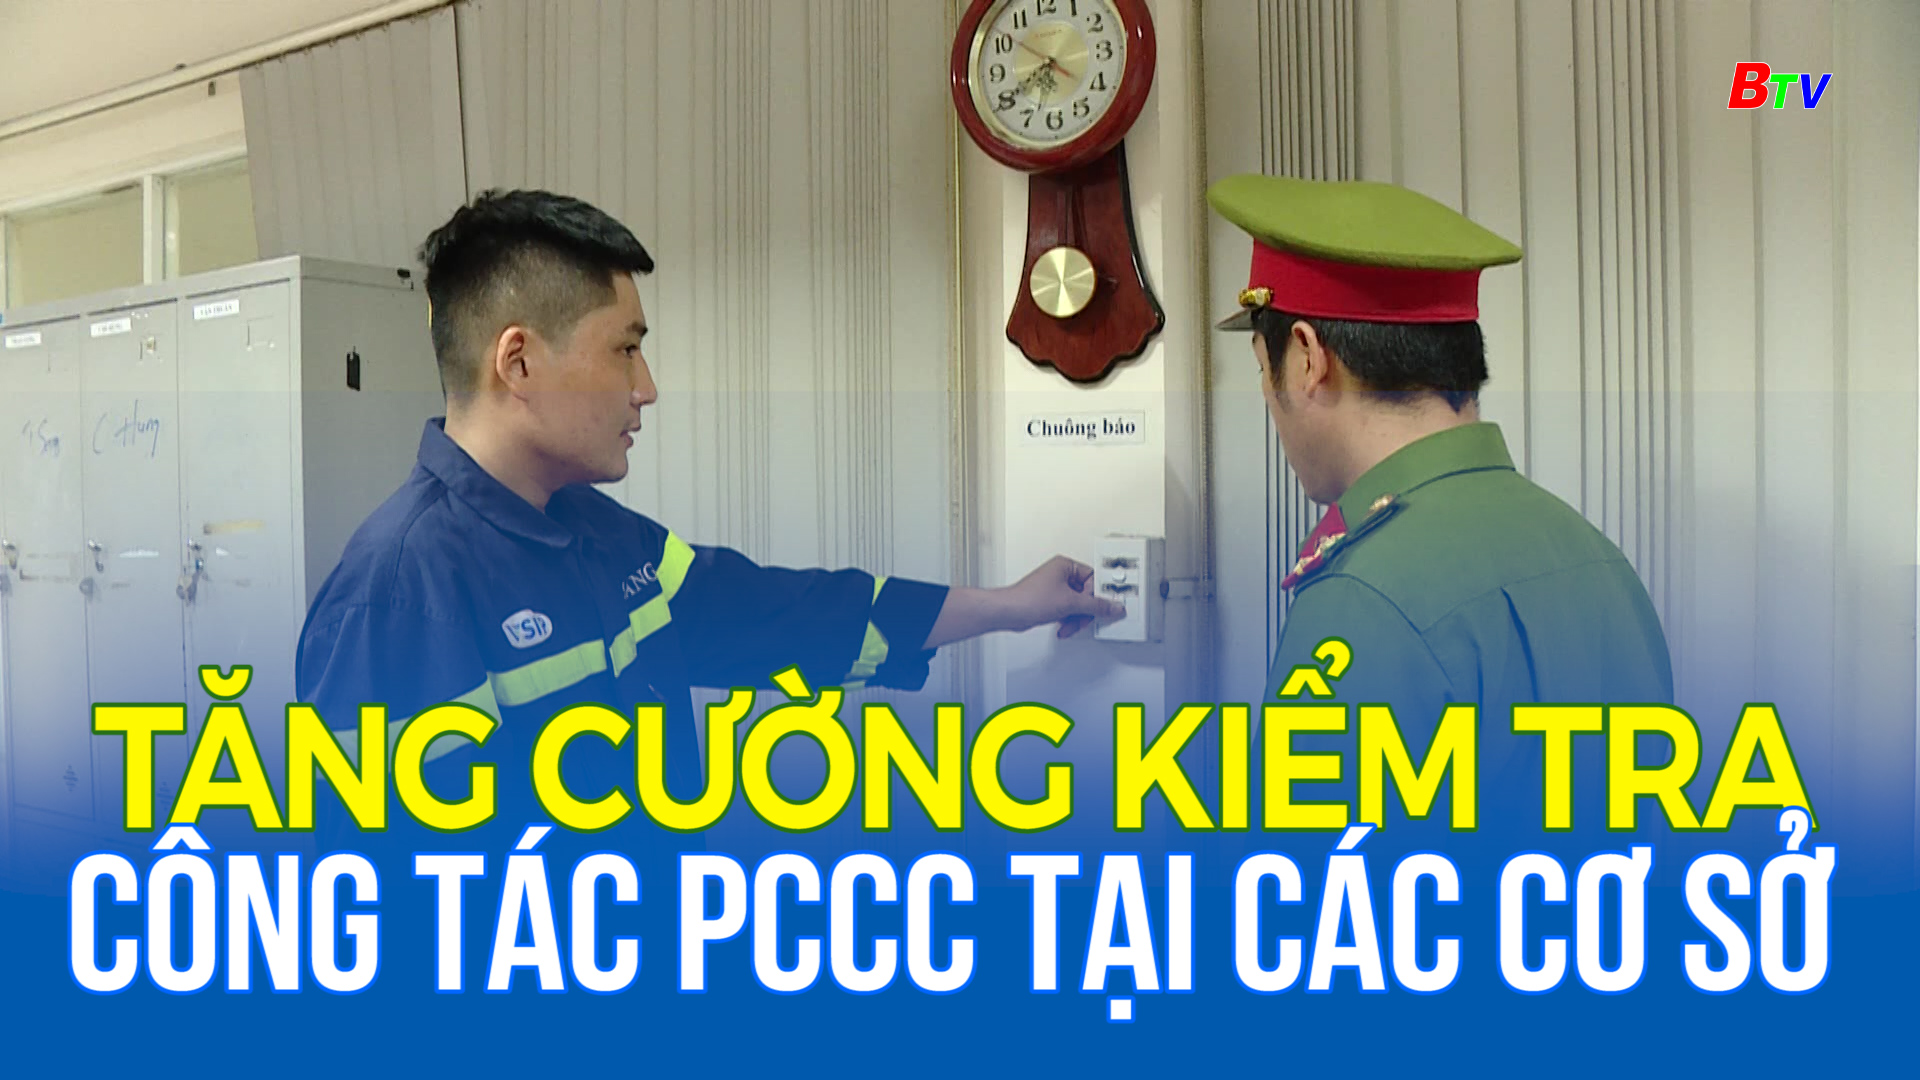 Tăng cường kiểm tra công tác PCCC tại các cơ sở sau Tết 